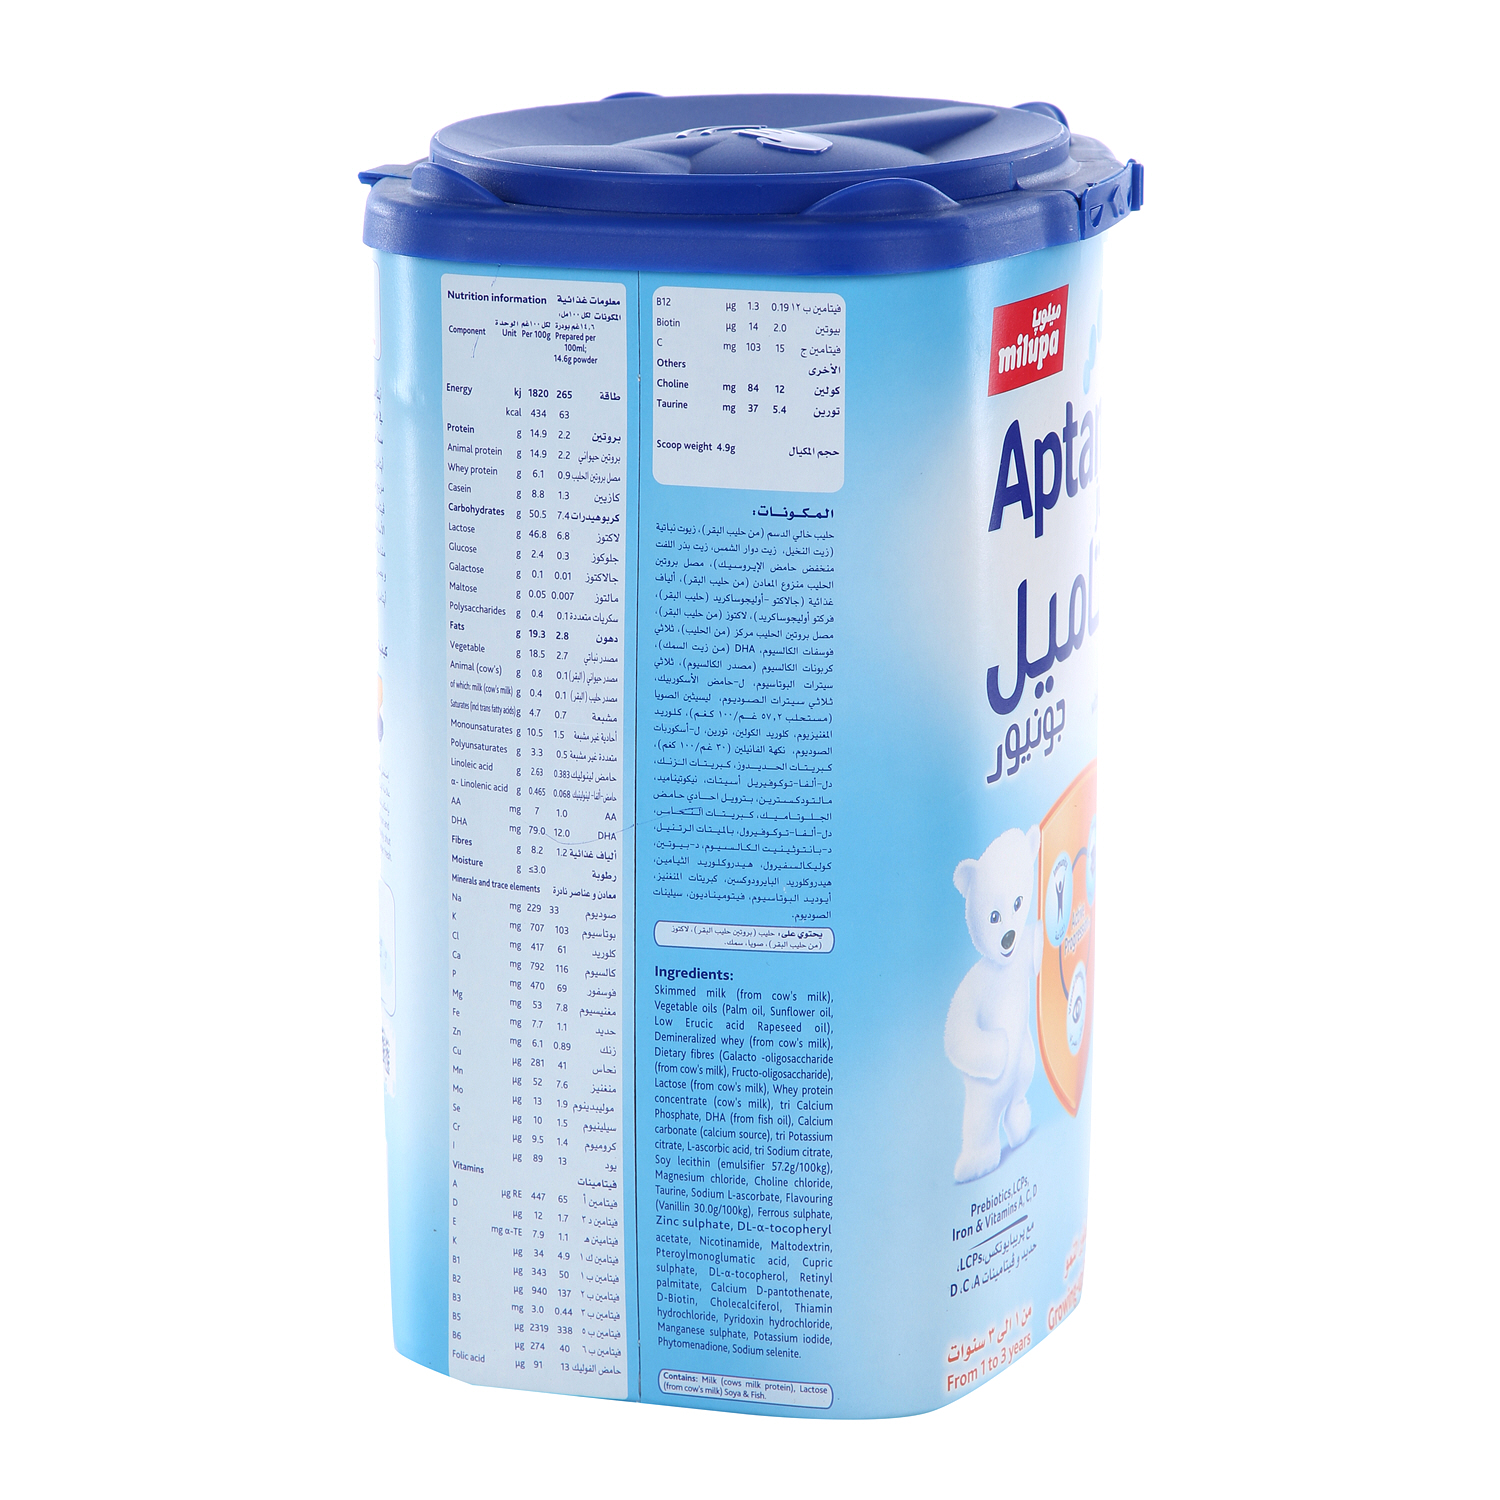 ميلوبا أبتاميل جينيور 3 مسحوق الحليب للأطفال 900 جرام